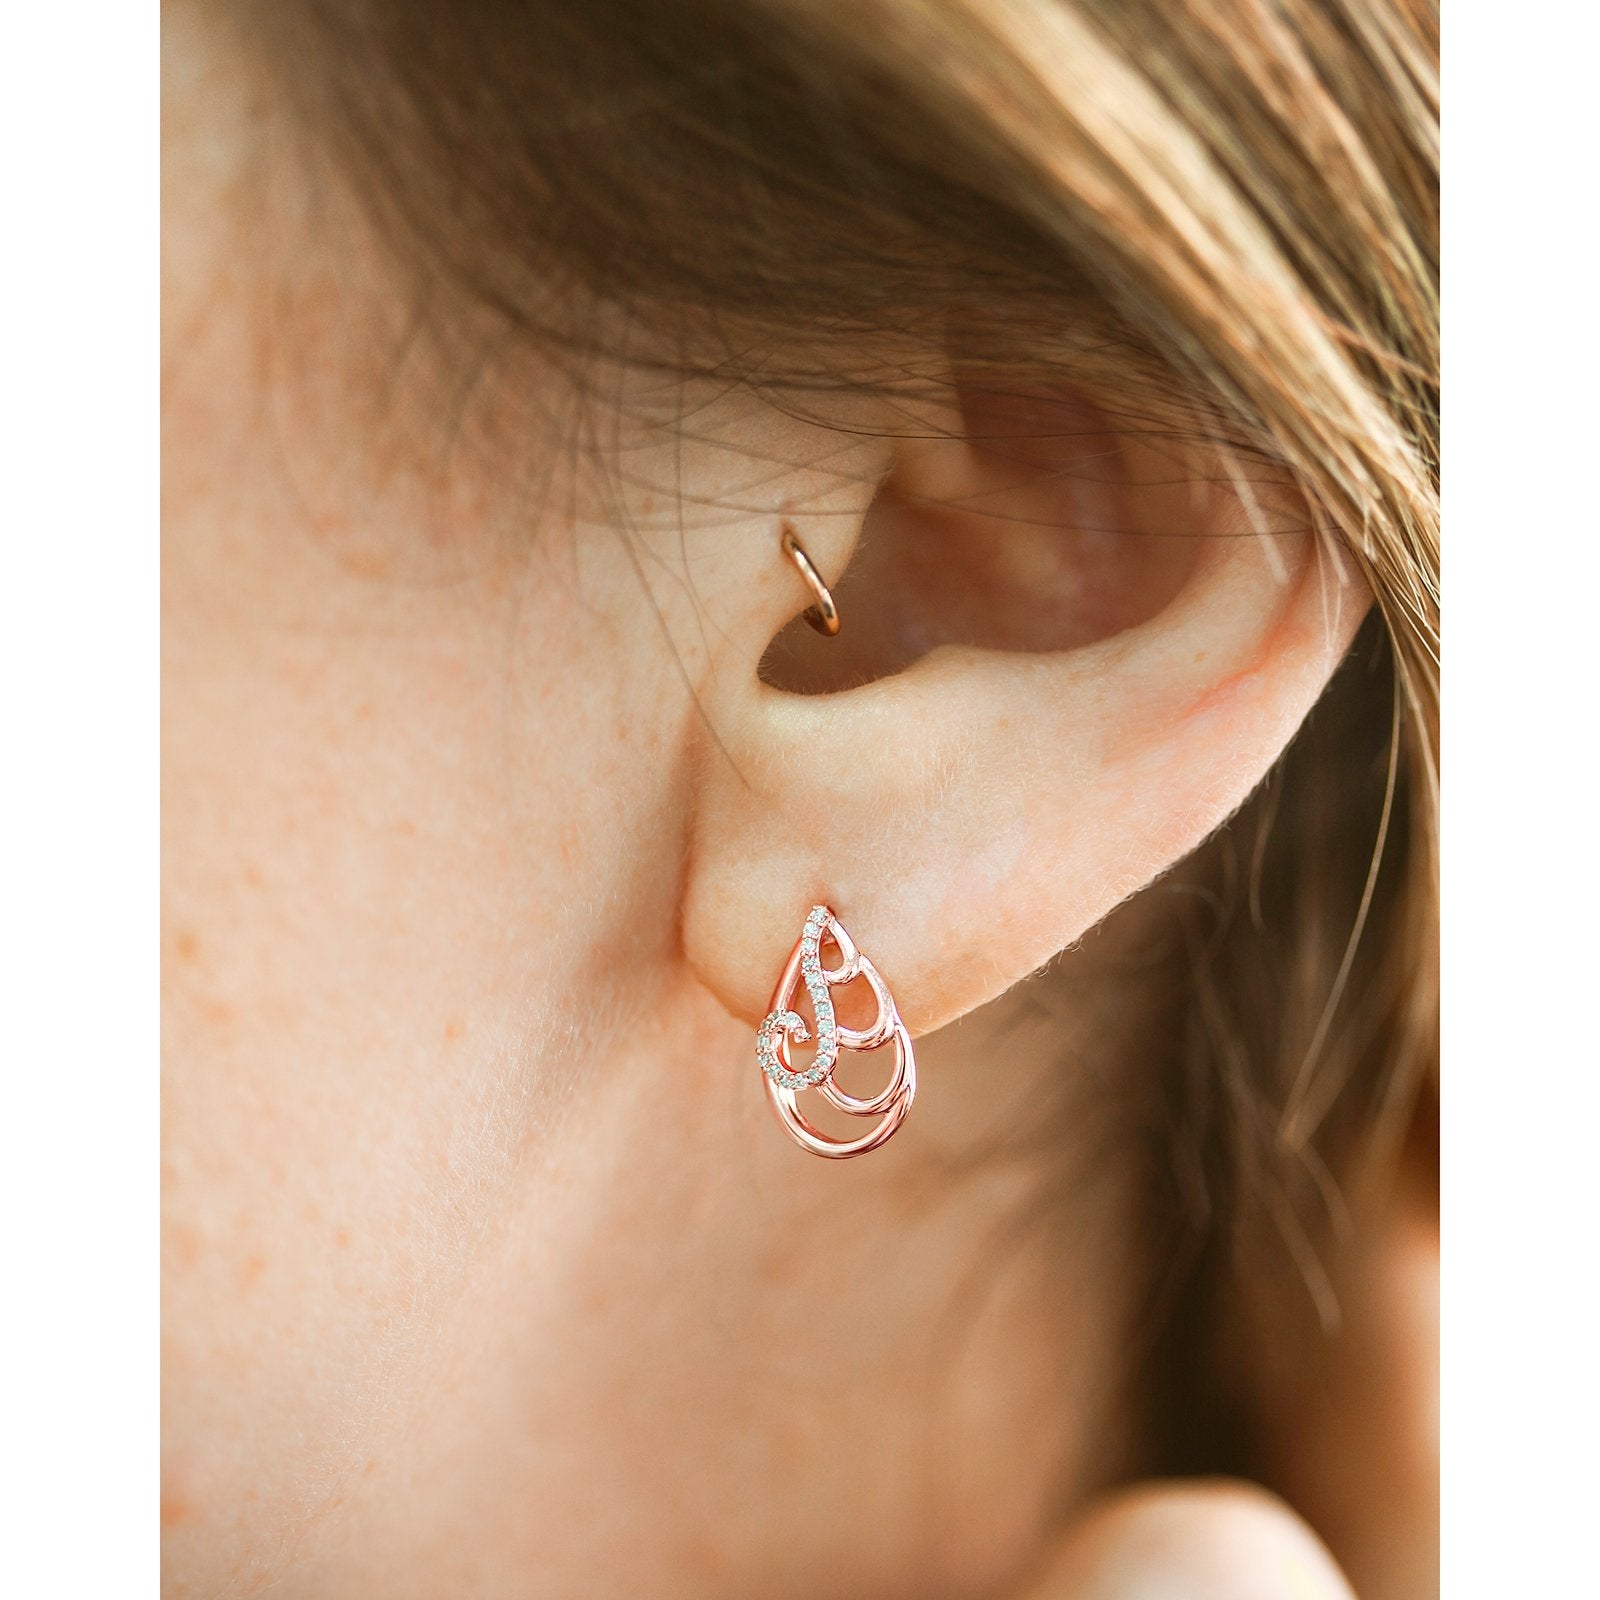 Wisp Flat Back Earring (single), Solid 10k Gold Earring